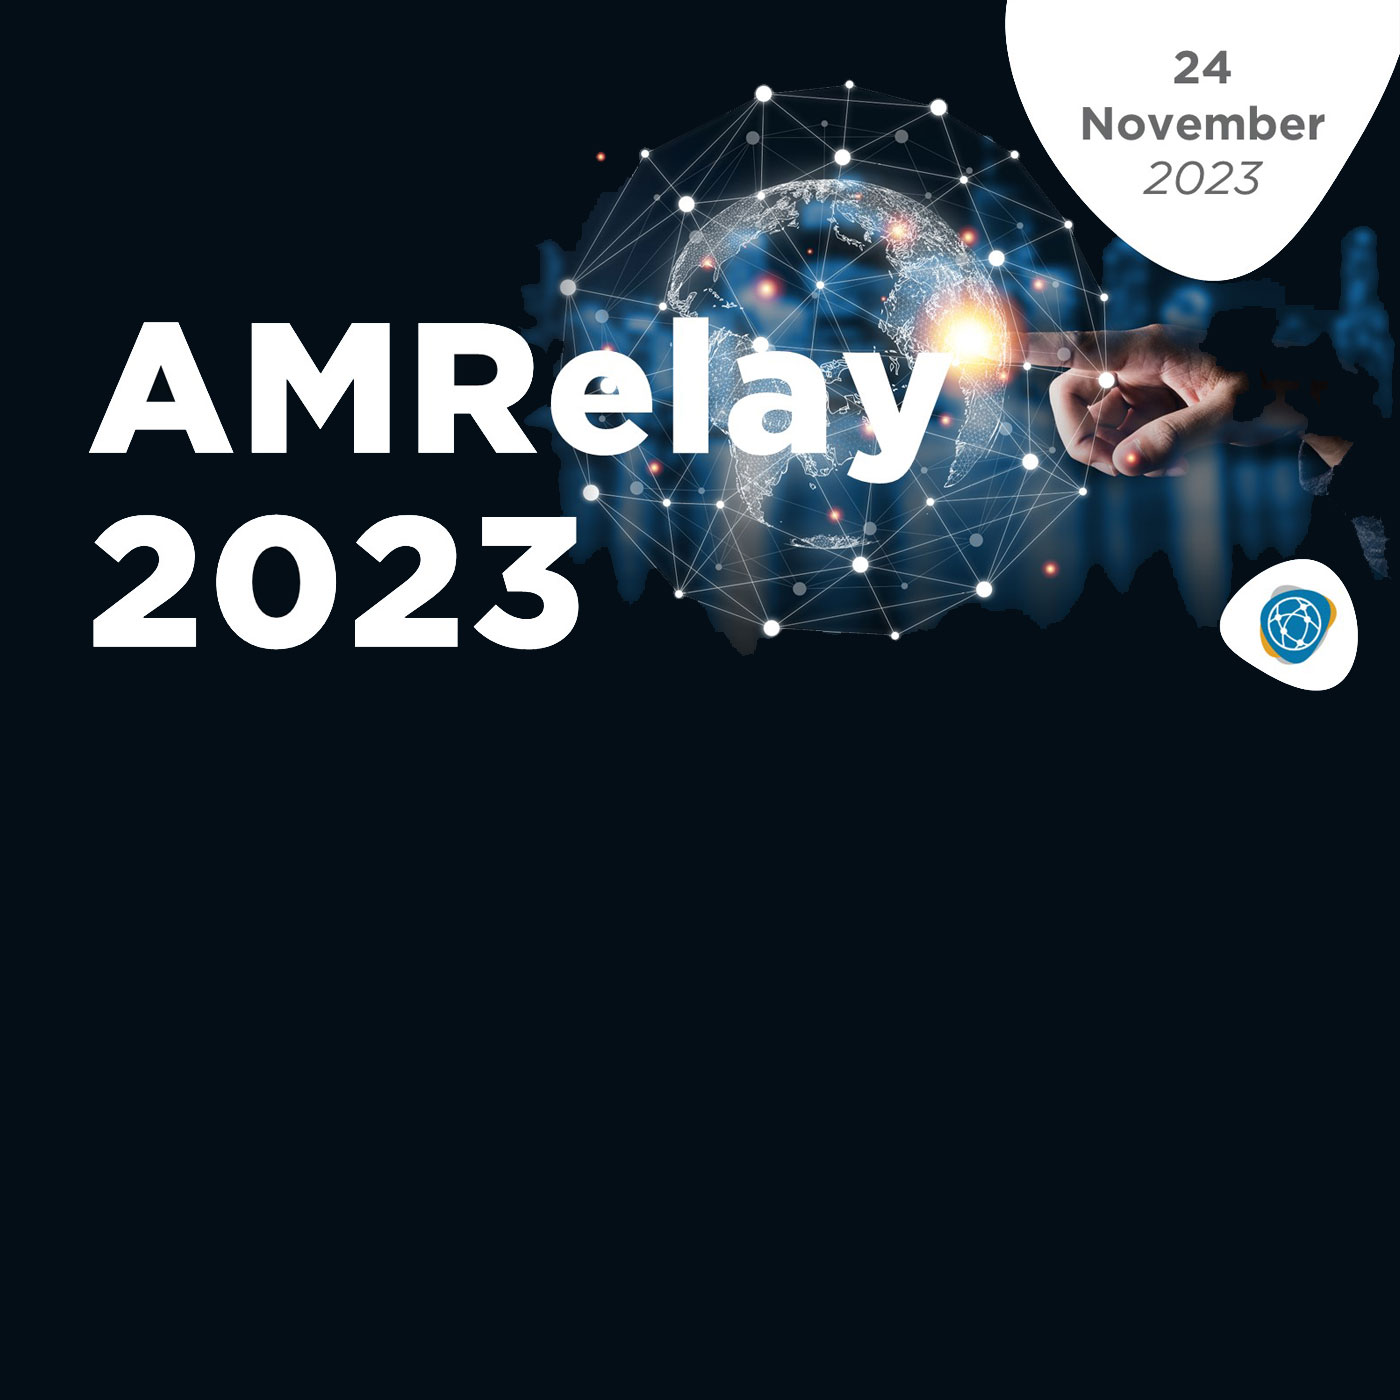 AMRelay 2023 logo